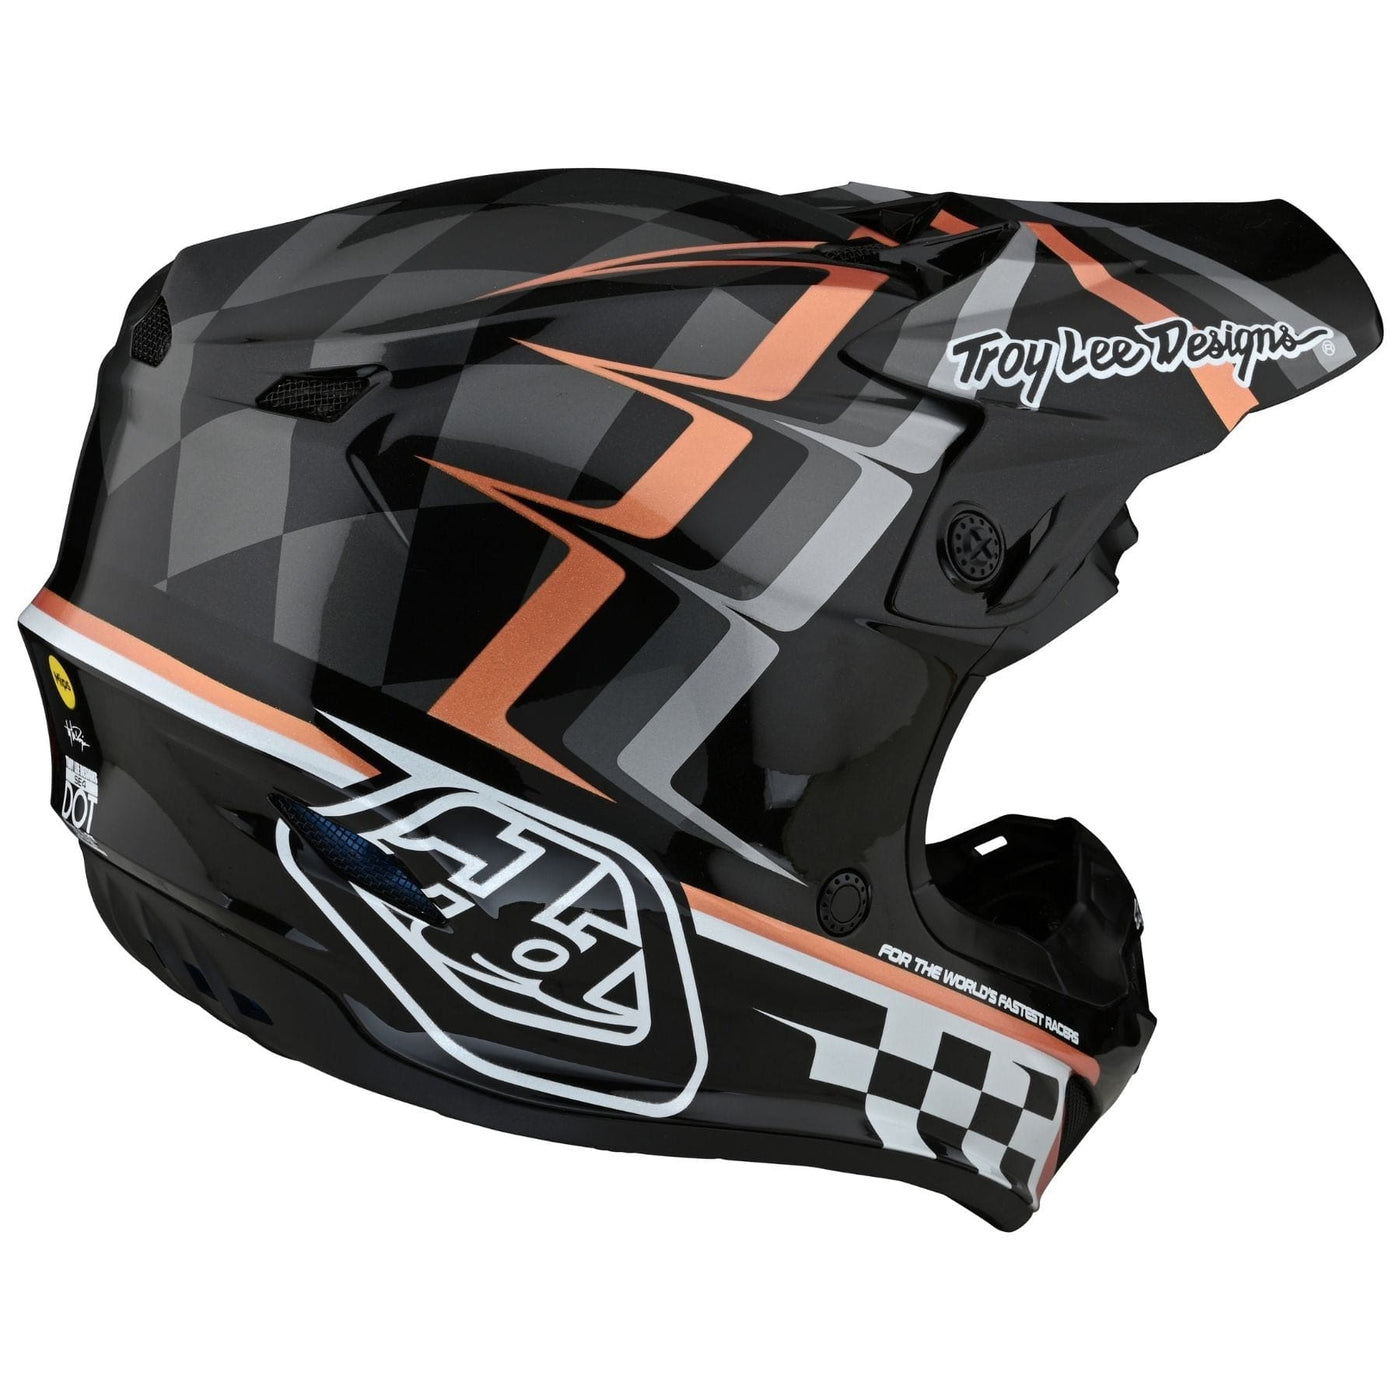 motocross helmet for downhill mountain biking